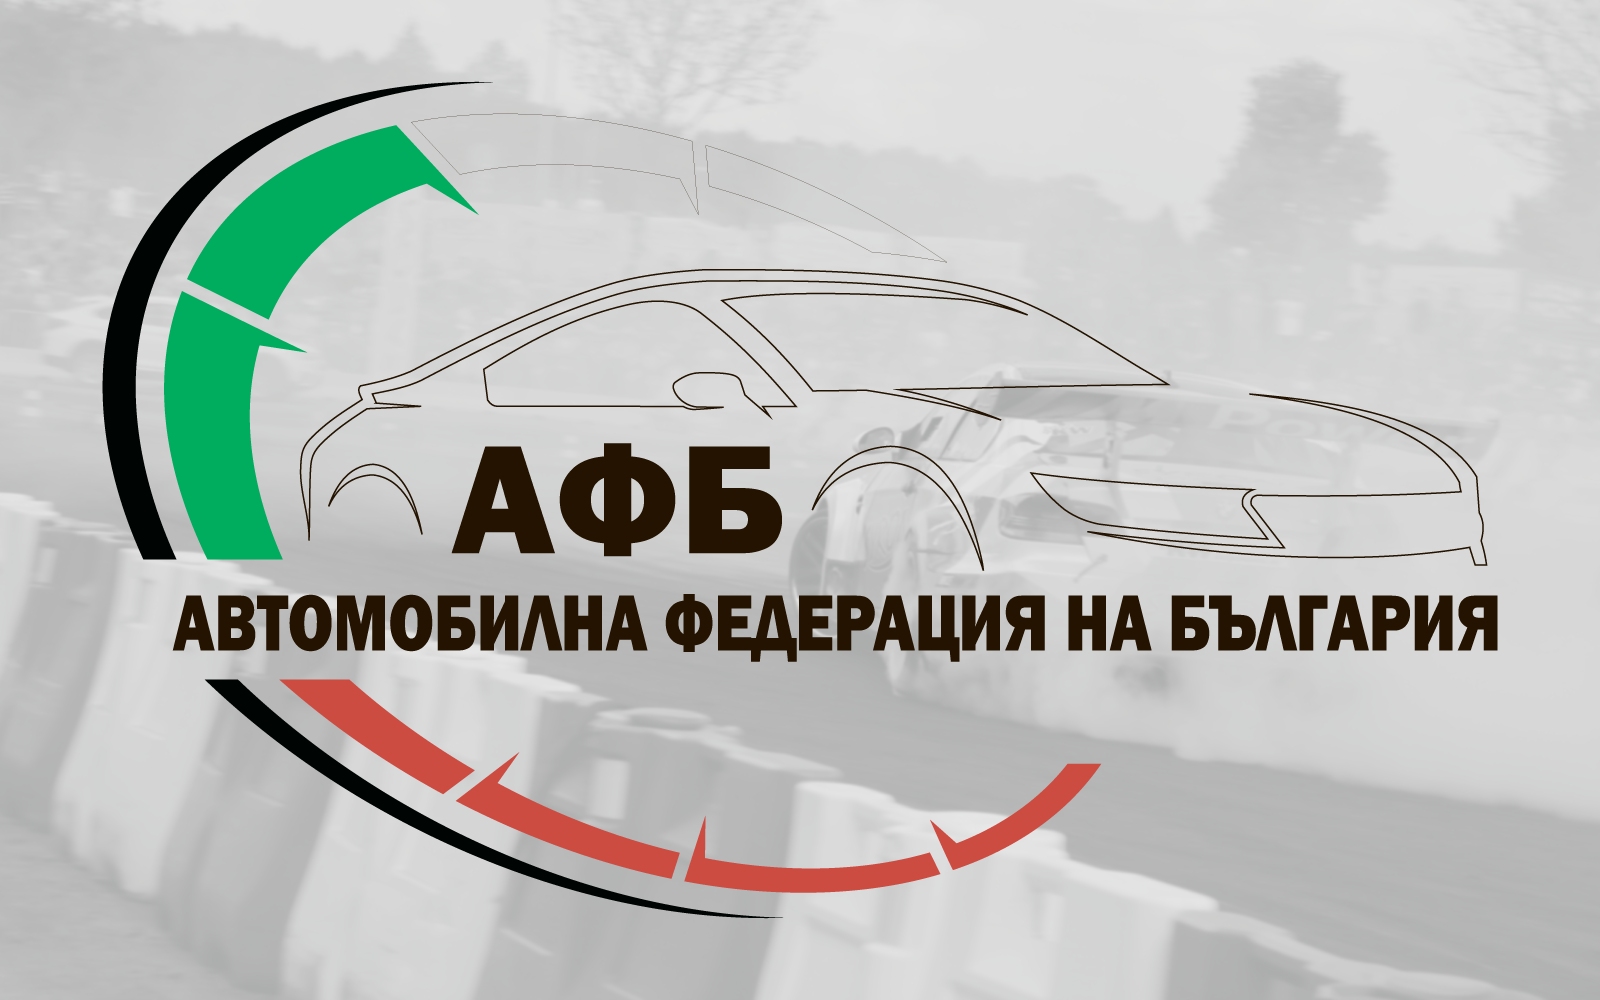 Този уикенд стартира сезон 2020 в автомобилния спорт в България